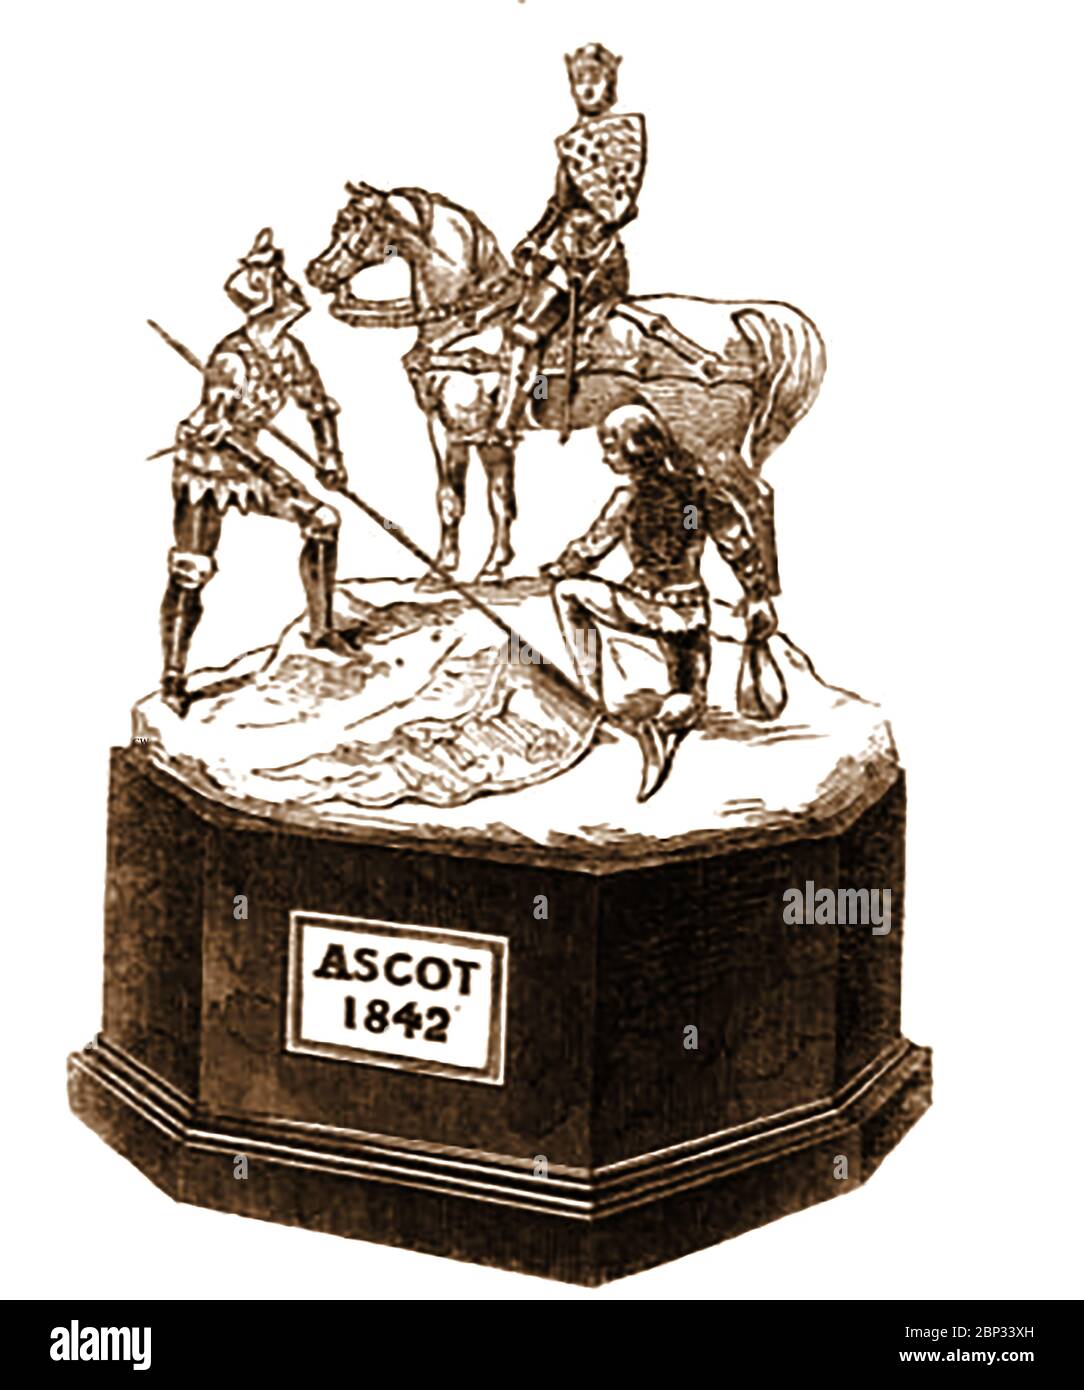 Il primo vero trofeo Ascot gold Cup, progettato e prodotto dalla Casa di Garrard nel 1842. Fu vinta in quell'anno da Beeswing (1833–1854), un cavallo da corsa britannico del XIX secolo, considerato al suo tempo come il più grande mare in Gran Bretagna e uno dei più grandi di tutti i tempi, il suo Jockey era D Cartwright (proprietario William Orde). L'evento è stato fondato nel 1807. Foto Stock